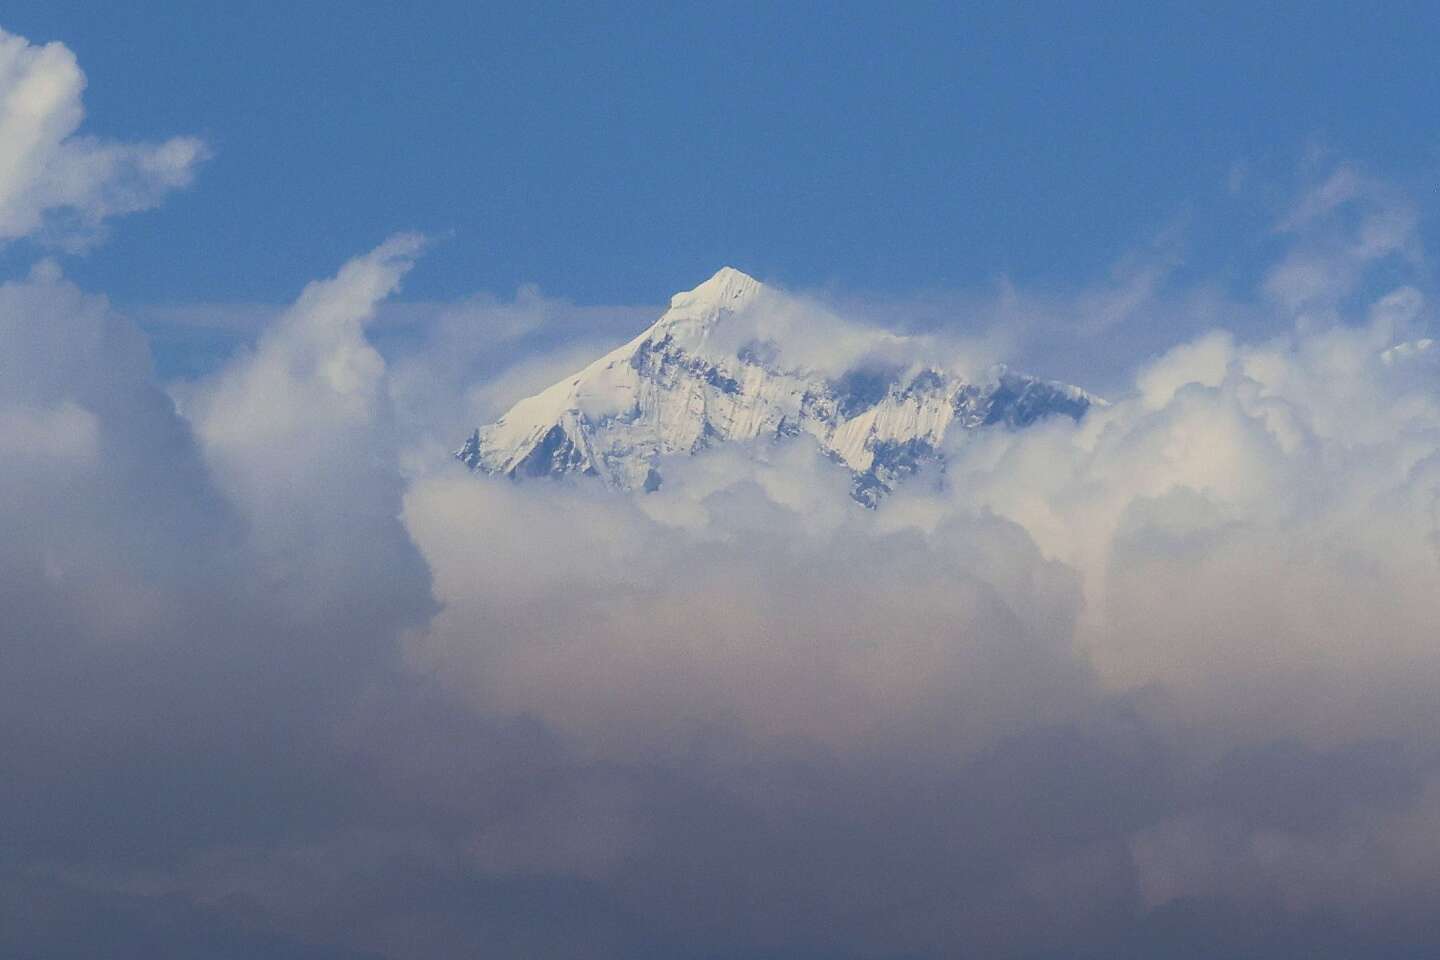 Am Everest stirbt ein amerikanischer Bergsteiger beim Aufstieg